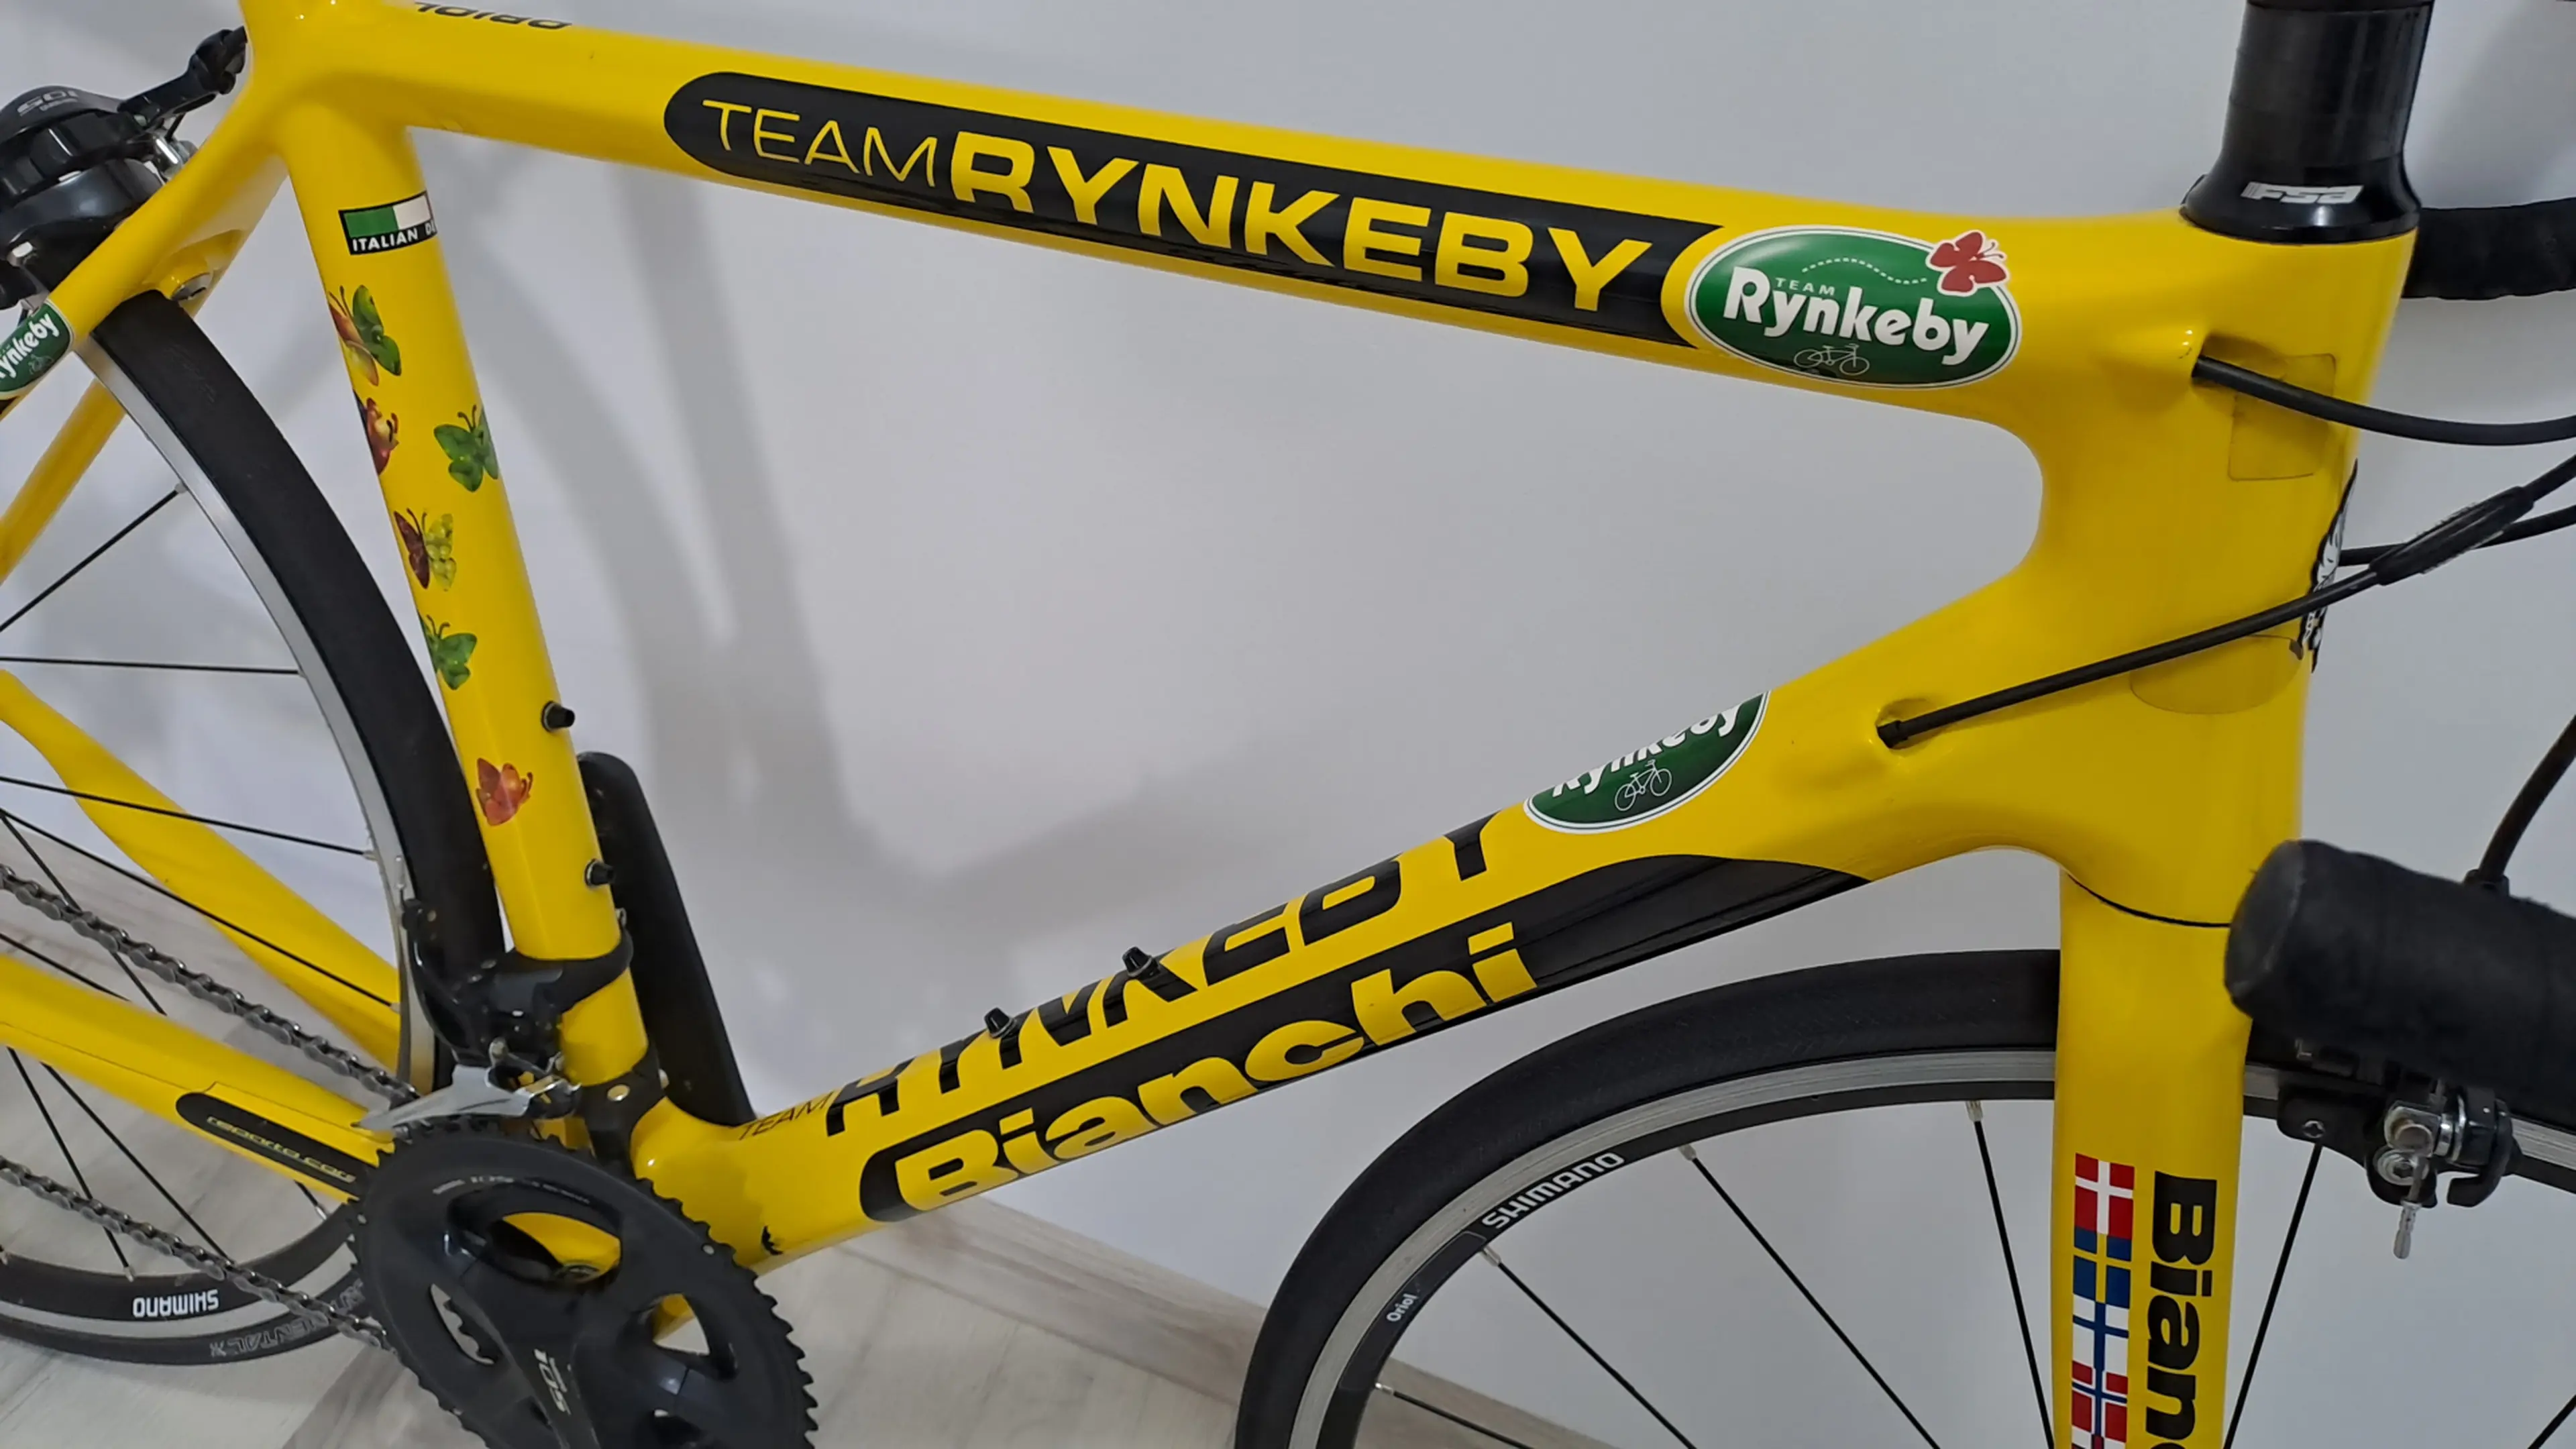 3. Bianchi Interpida Team Rynkeby carbon 2x11